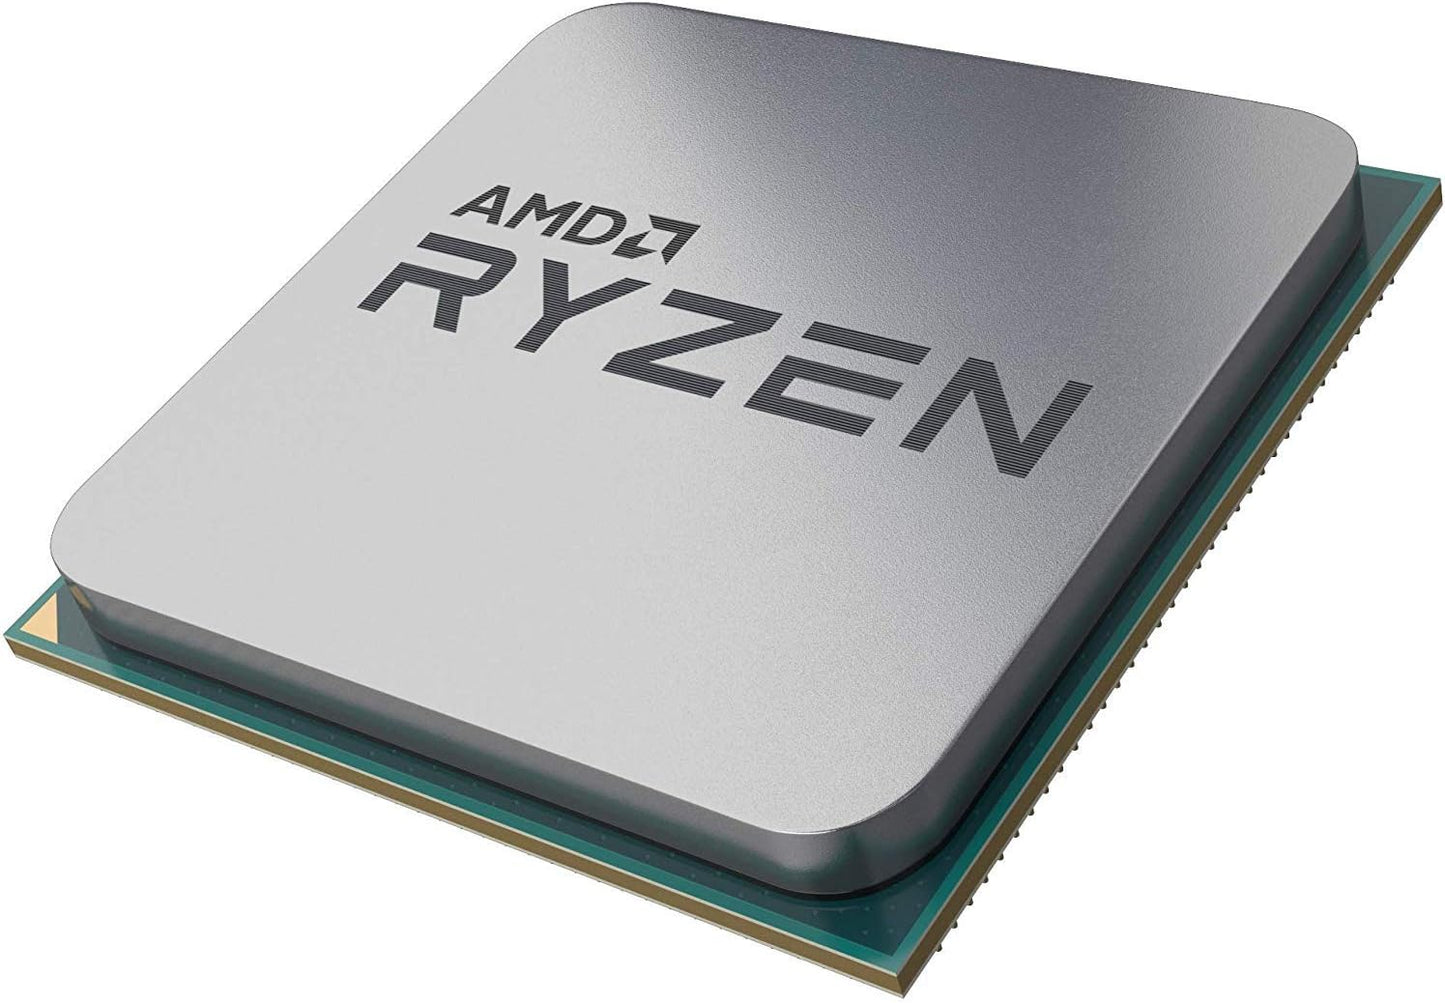 AMD RYZEN 9 3900x Socket AM4 processor